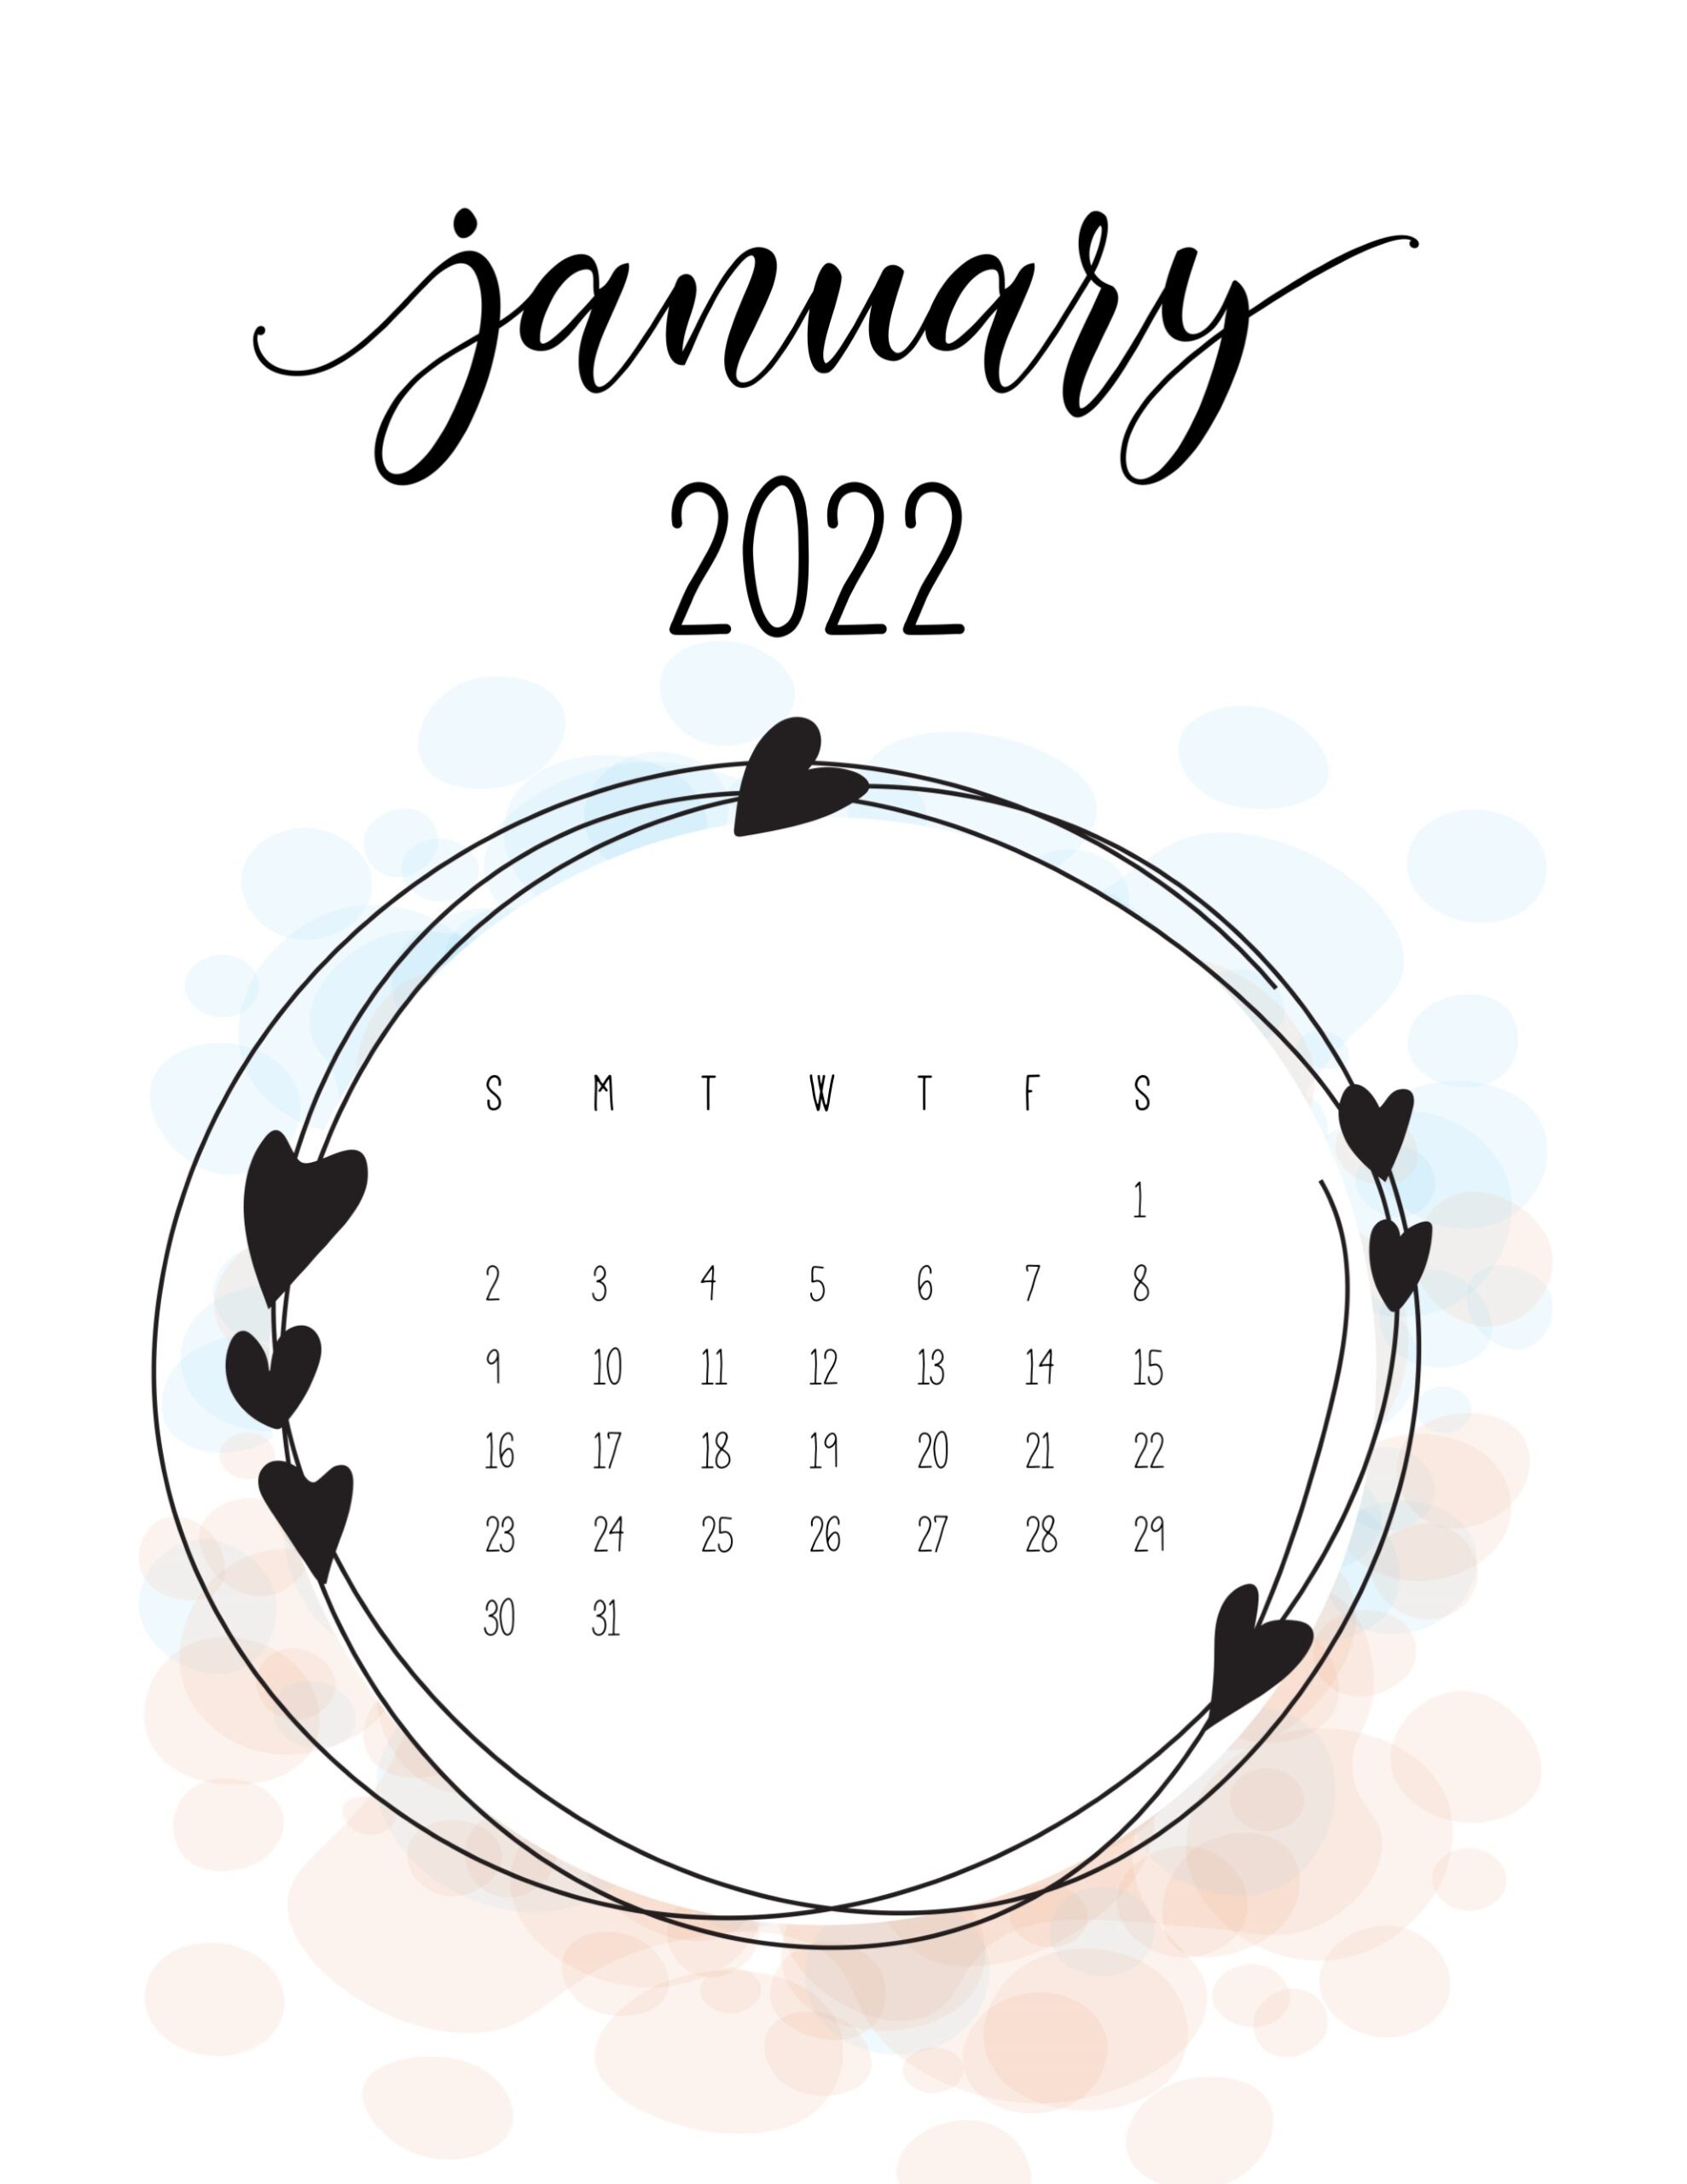 Calendario 2022 love janeiro